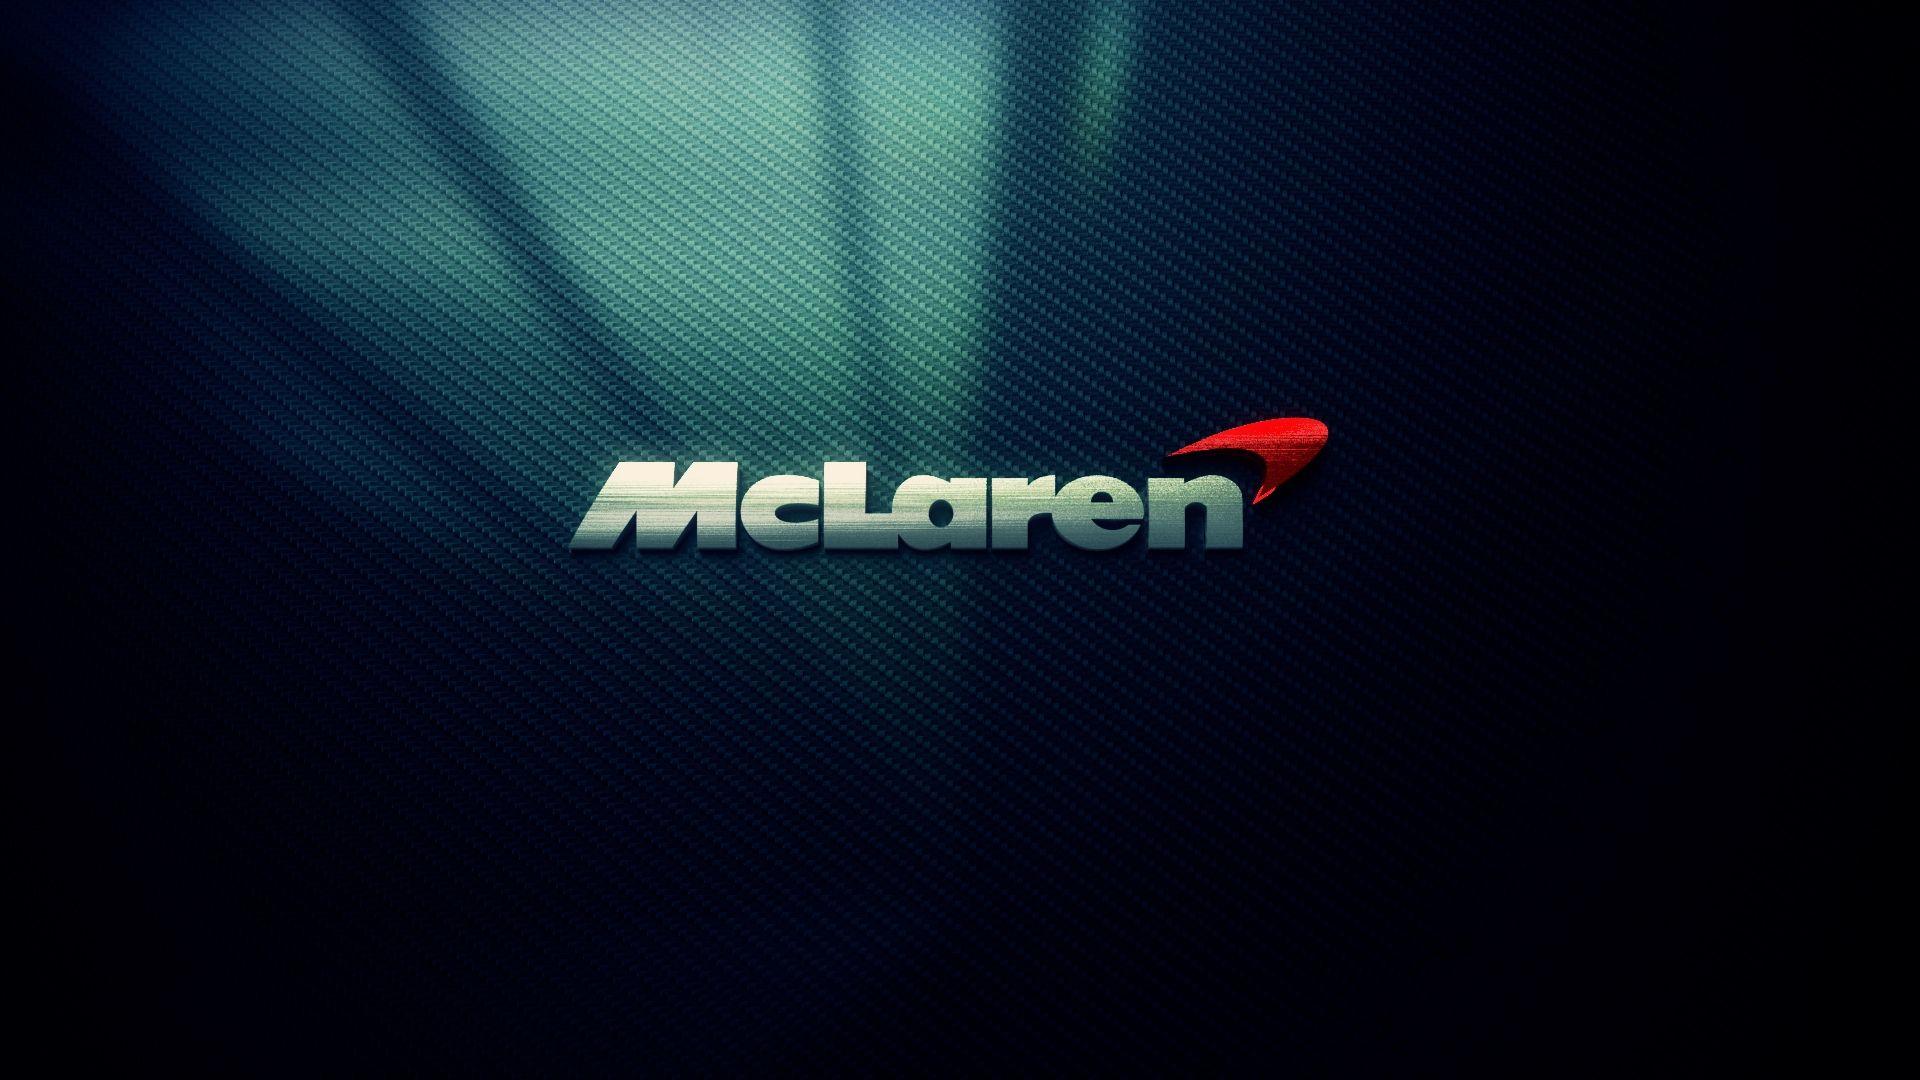 Mclaren Logo Wallpaper 28699 1920x1080 px